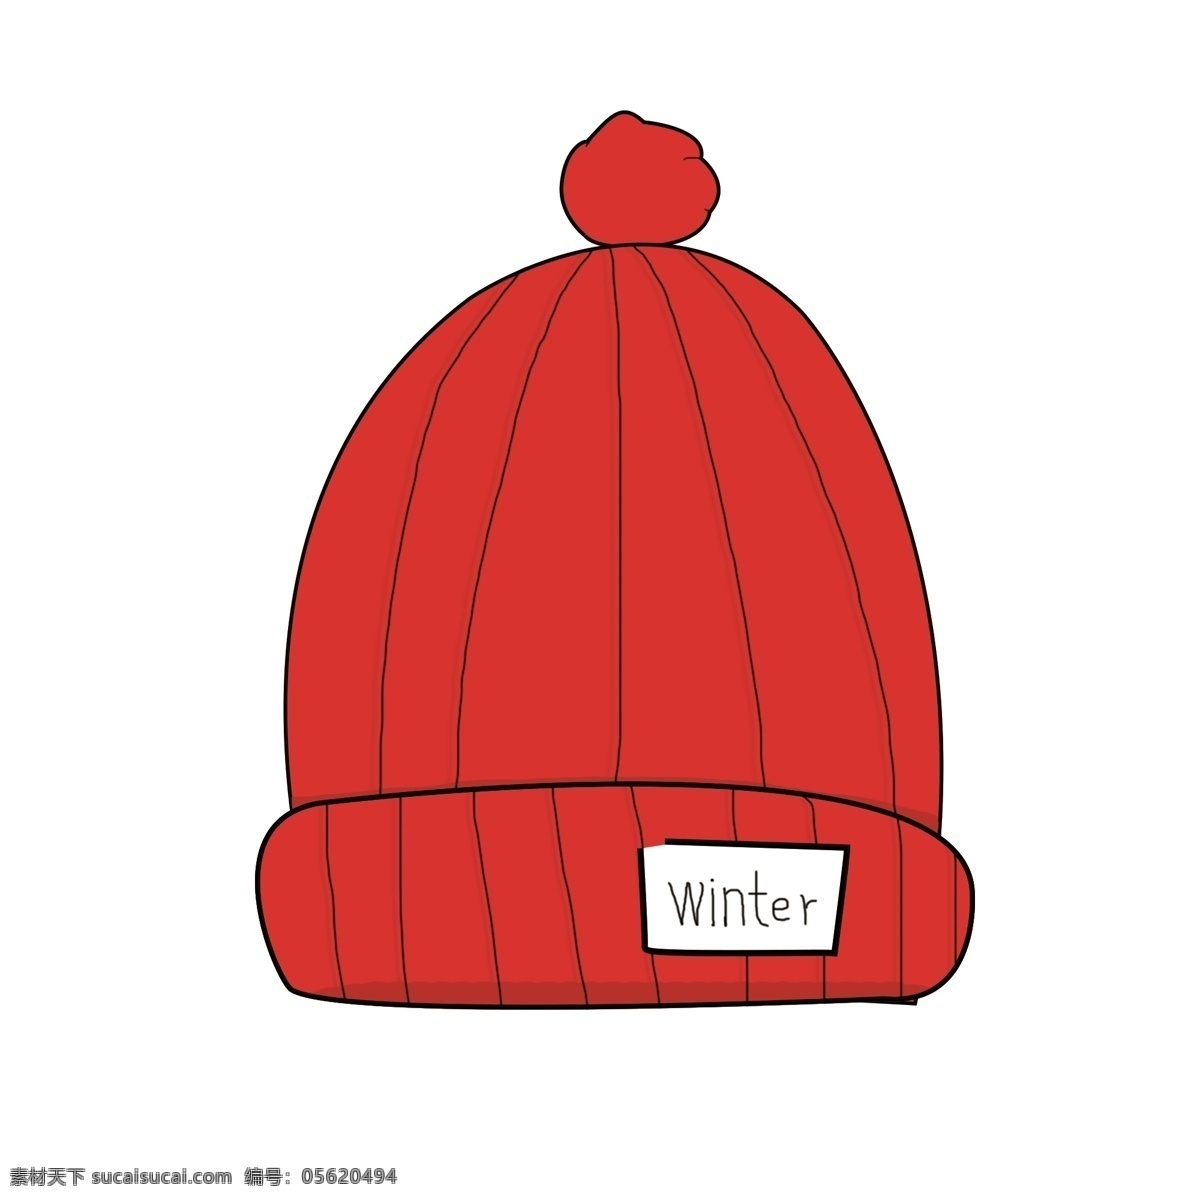 原创 手绘 冬天 帽子 商用 红色帽子 冬天元素 手绘元素 手绘帽子 冬天帽子